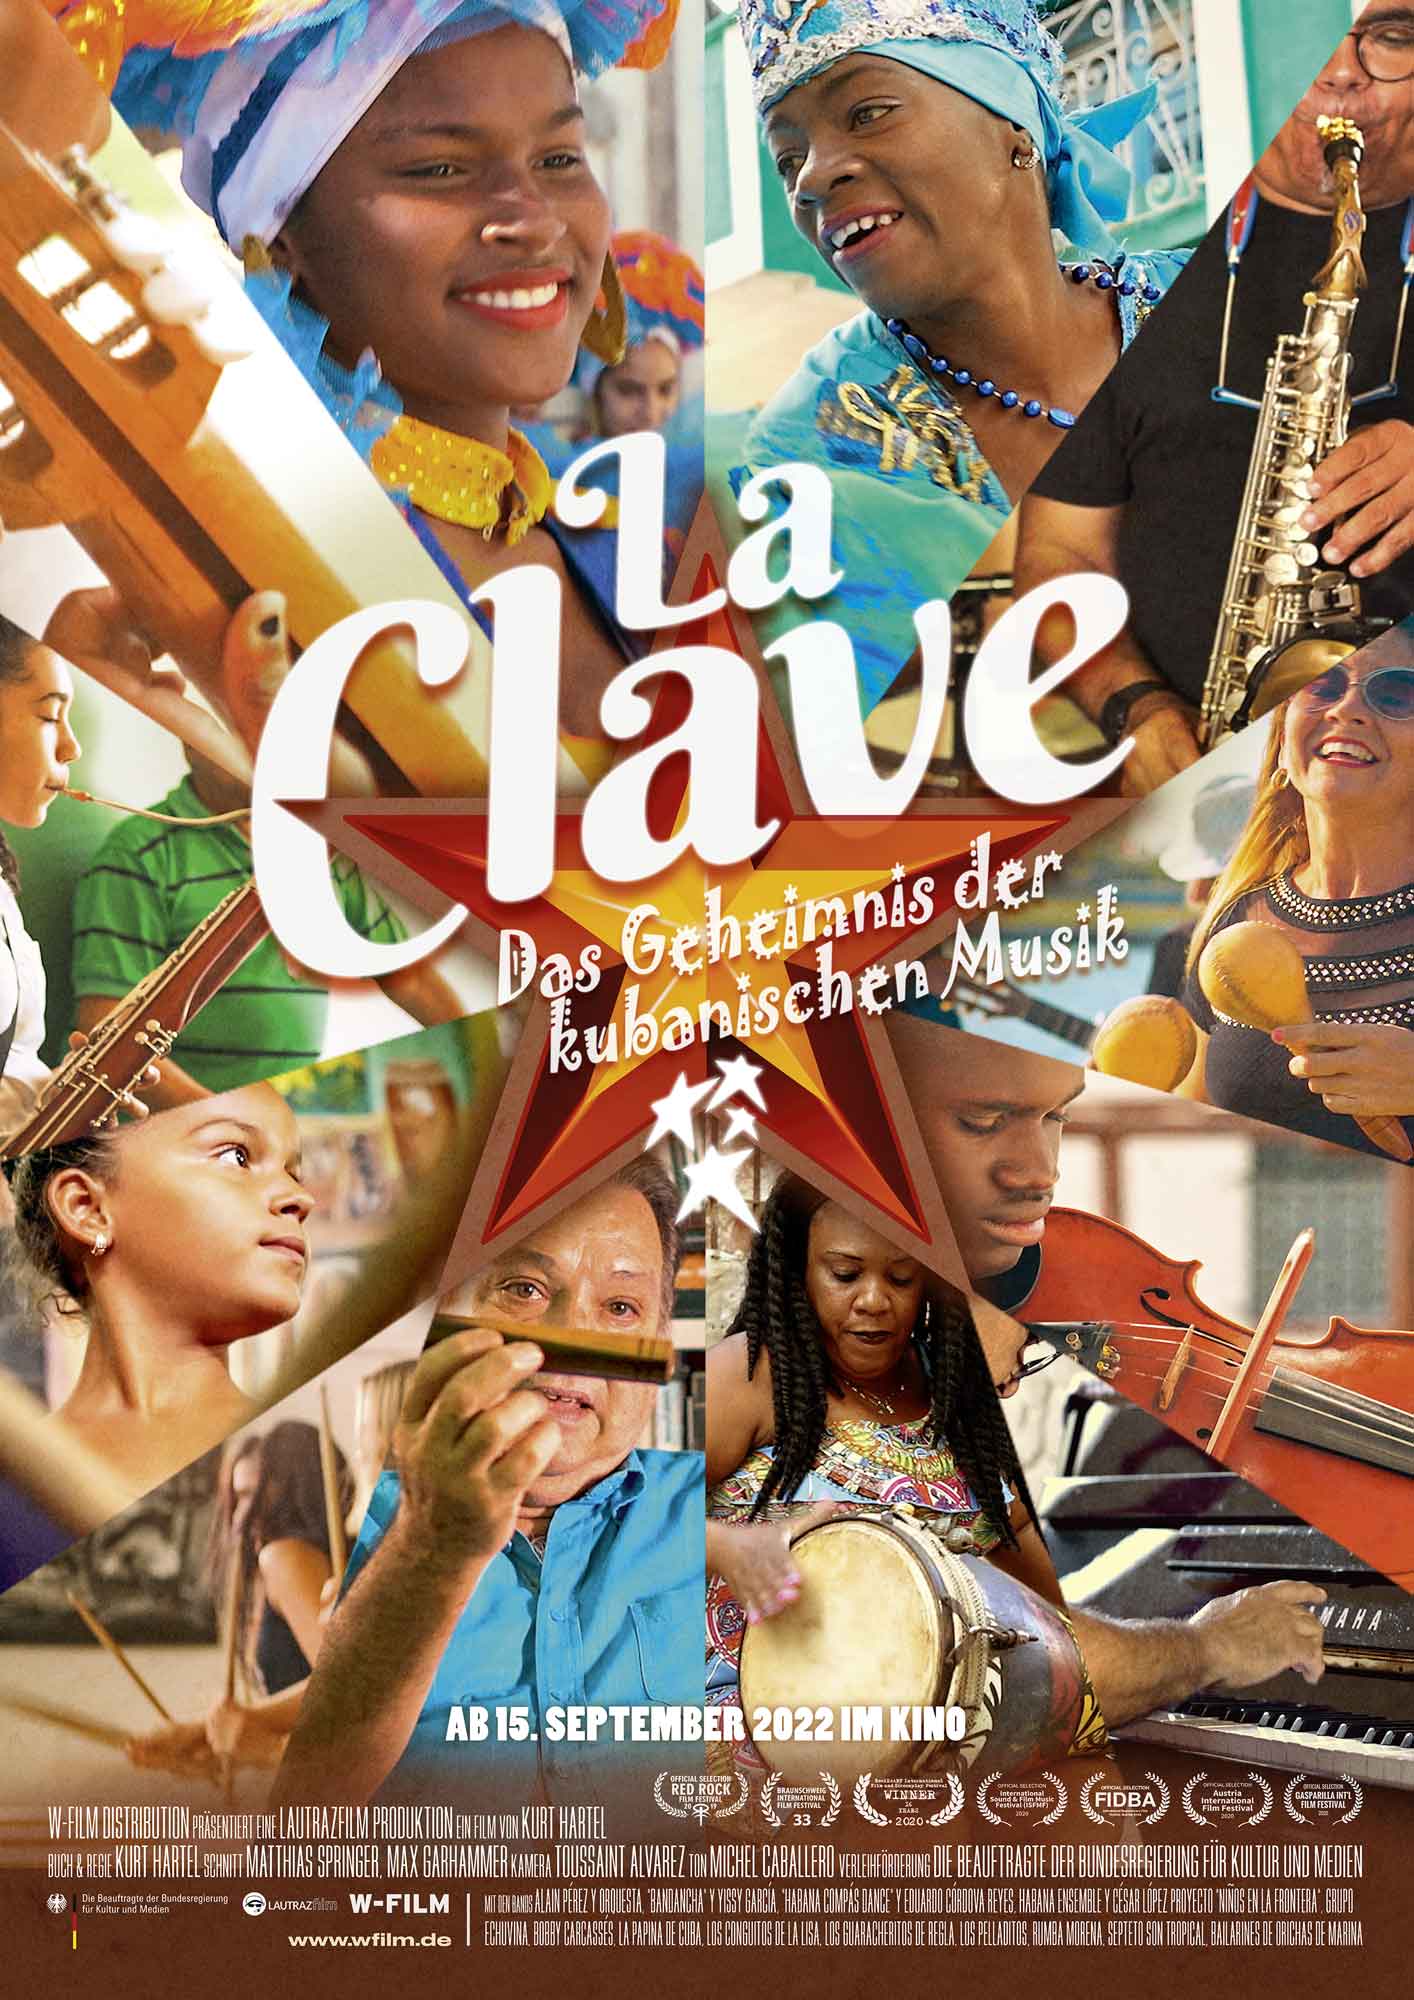 "La Clave" - Das Geheimnis der kubanischen Musik